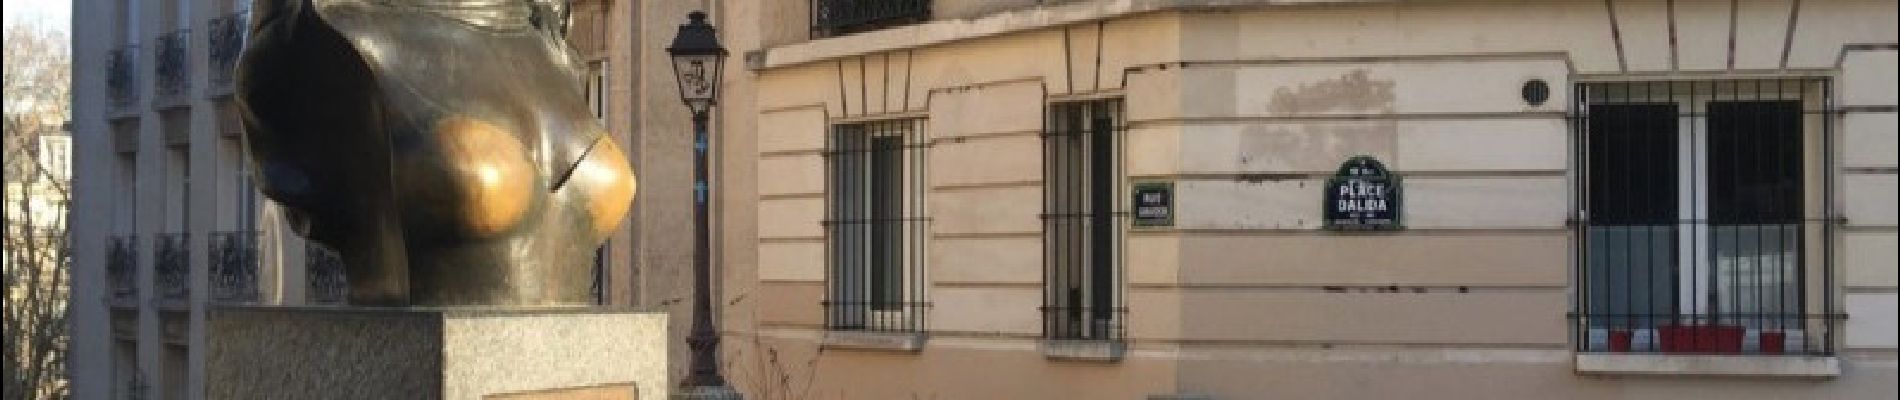 Punto de interés París - Buste de Dalida - Photo